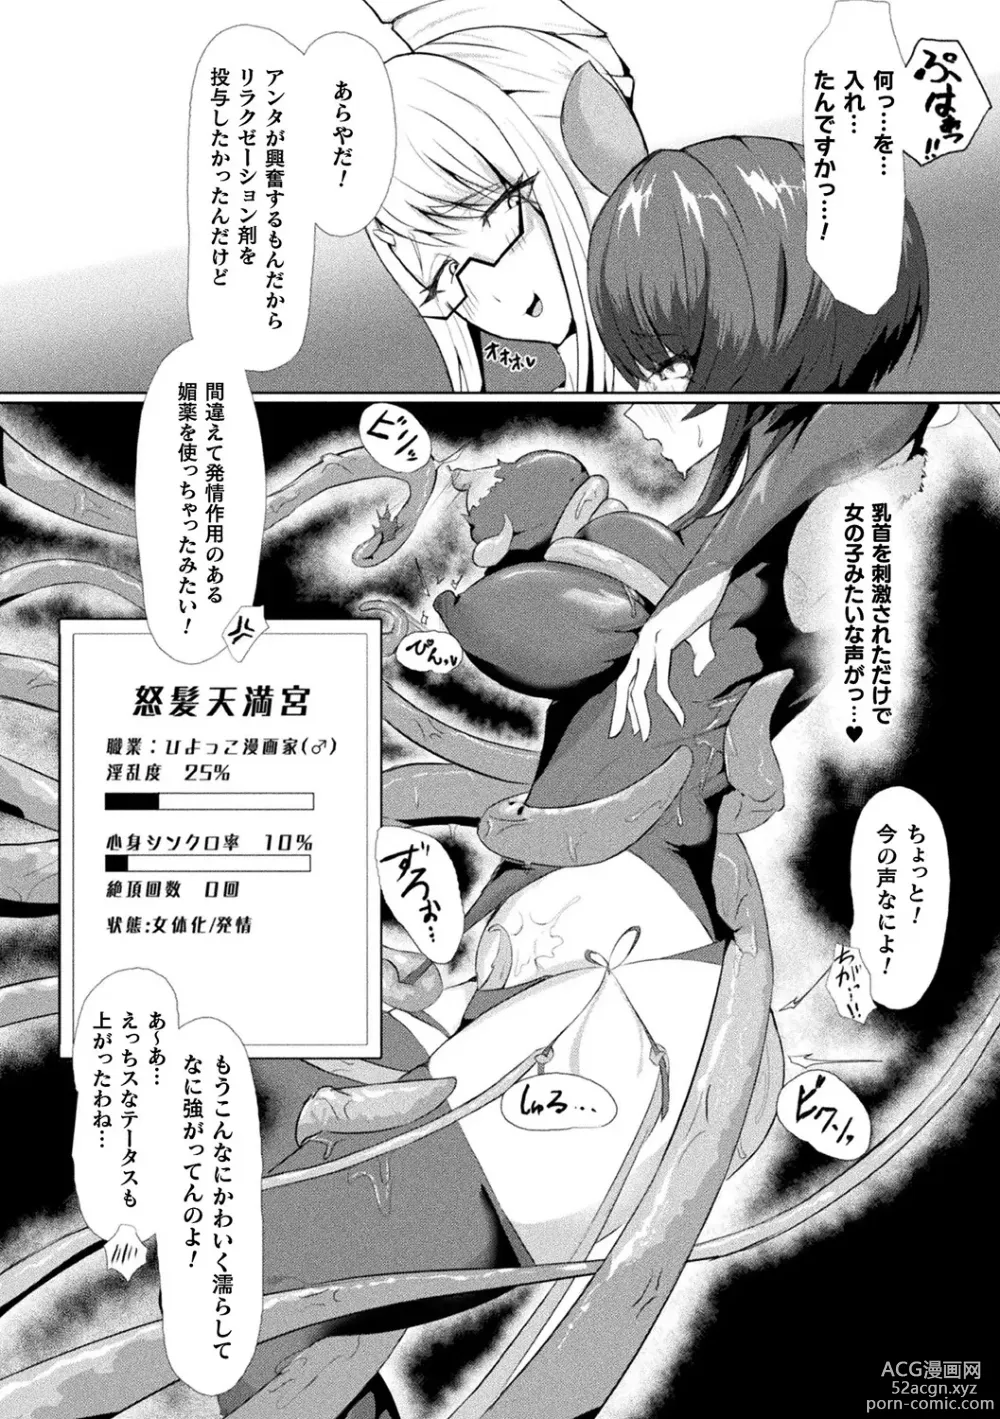 Page 92 of manga Bessatsu Comic Unreal AI ni Wakaraserareru Jinrui Hen Vol. 2